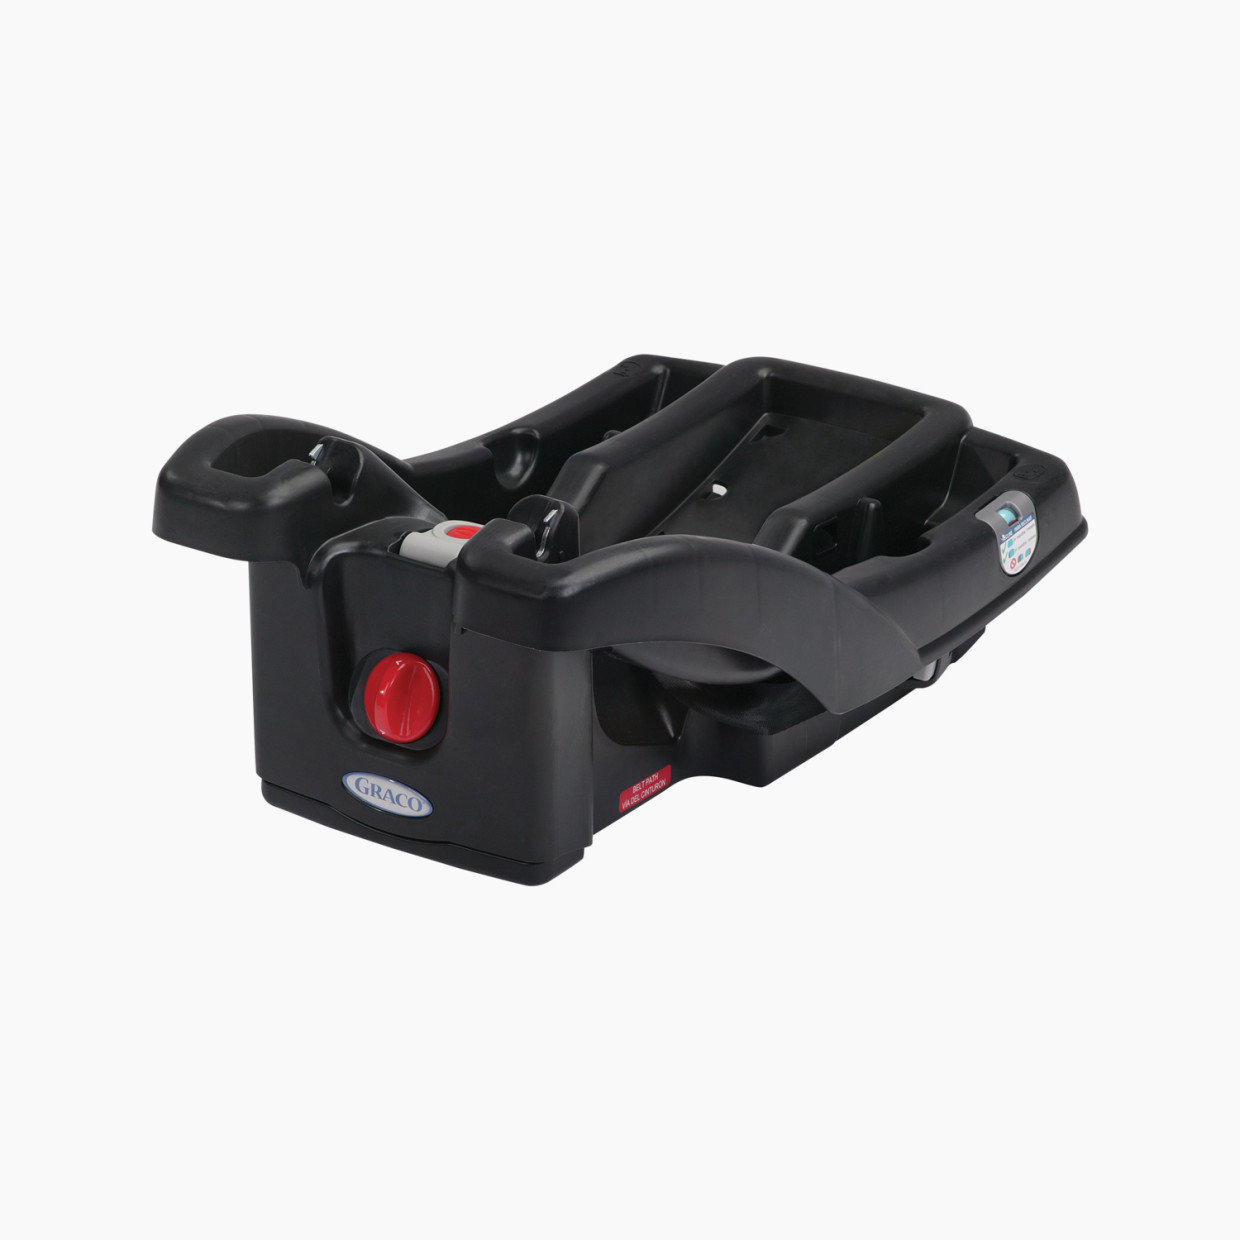 Graco SnugRide Click Connect LX Infant Car Seat Base - Black.